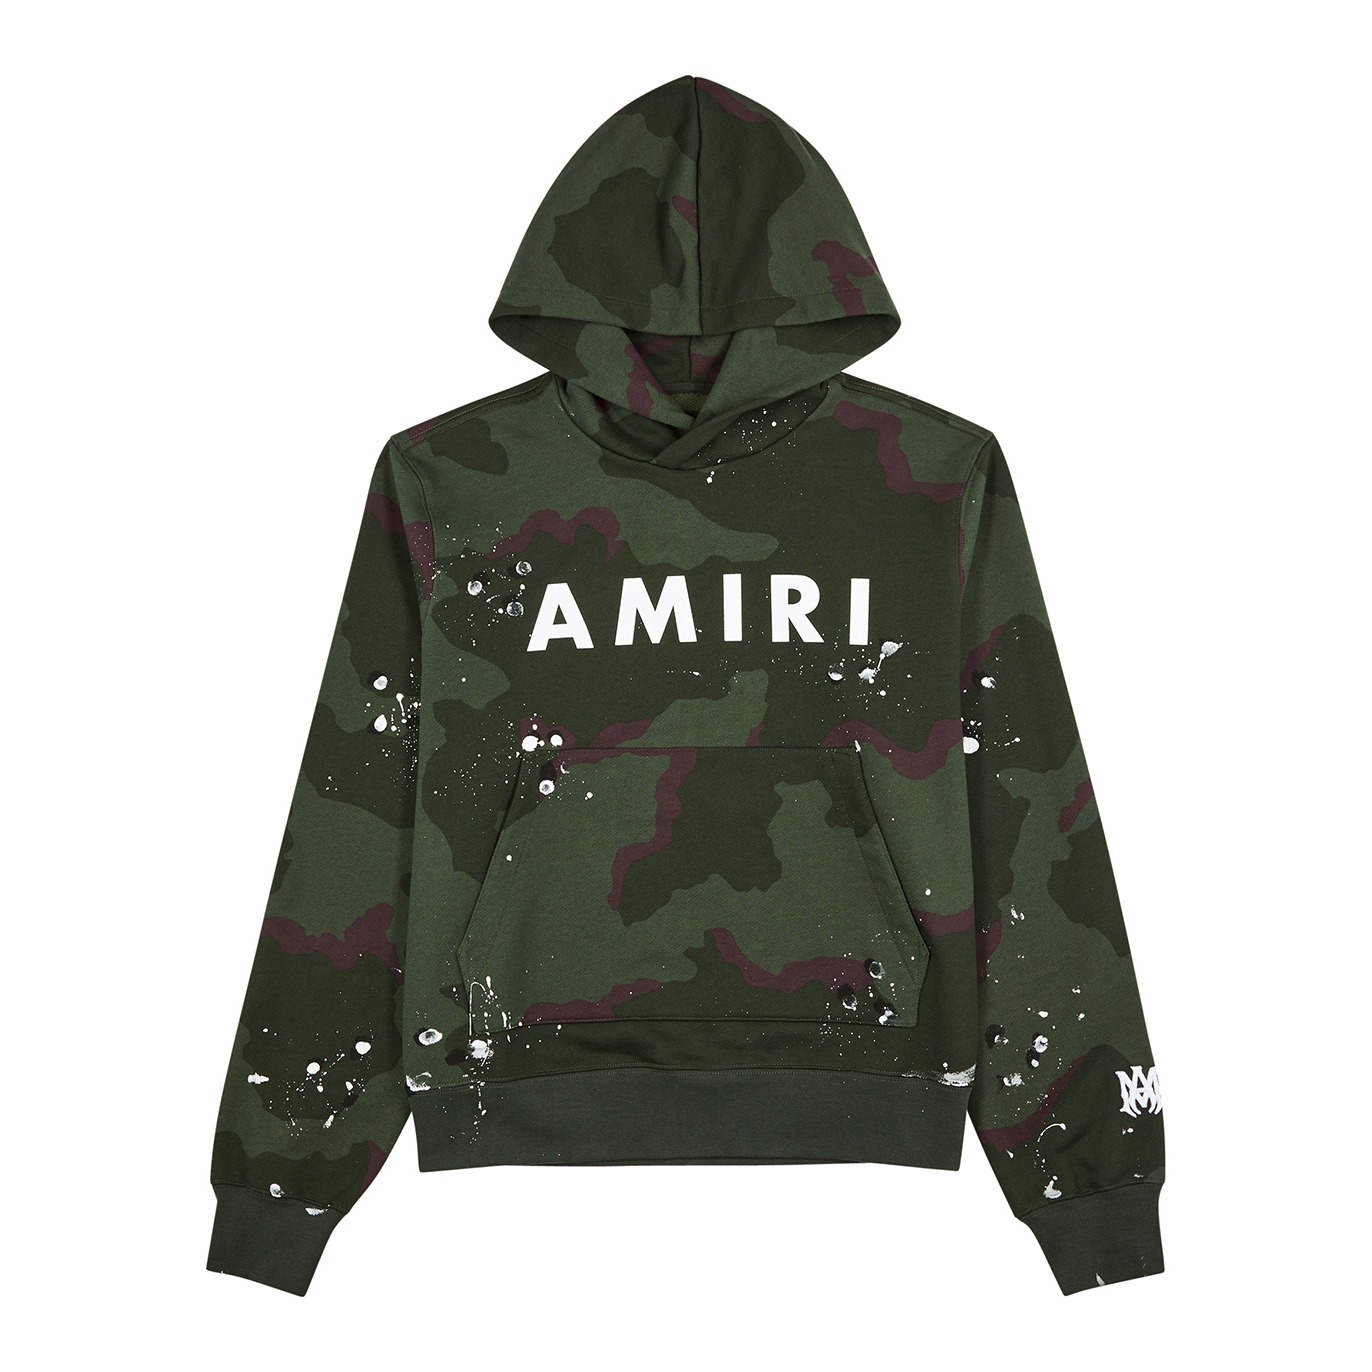 Amiri Army Logo Hooded Cotton Sweatshirt - Green - L